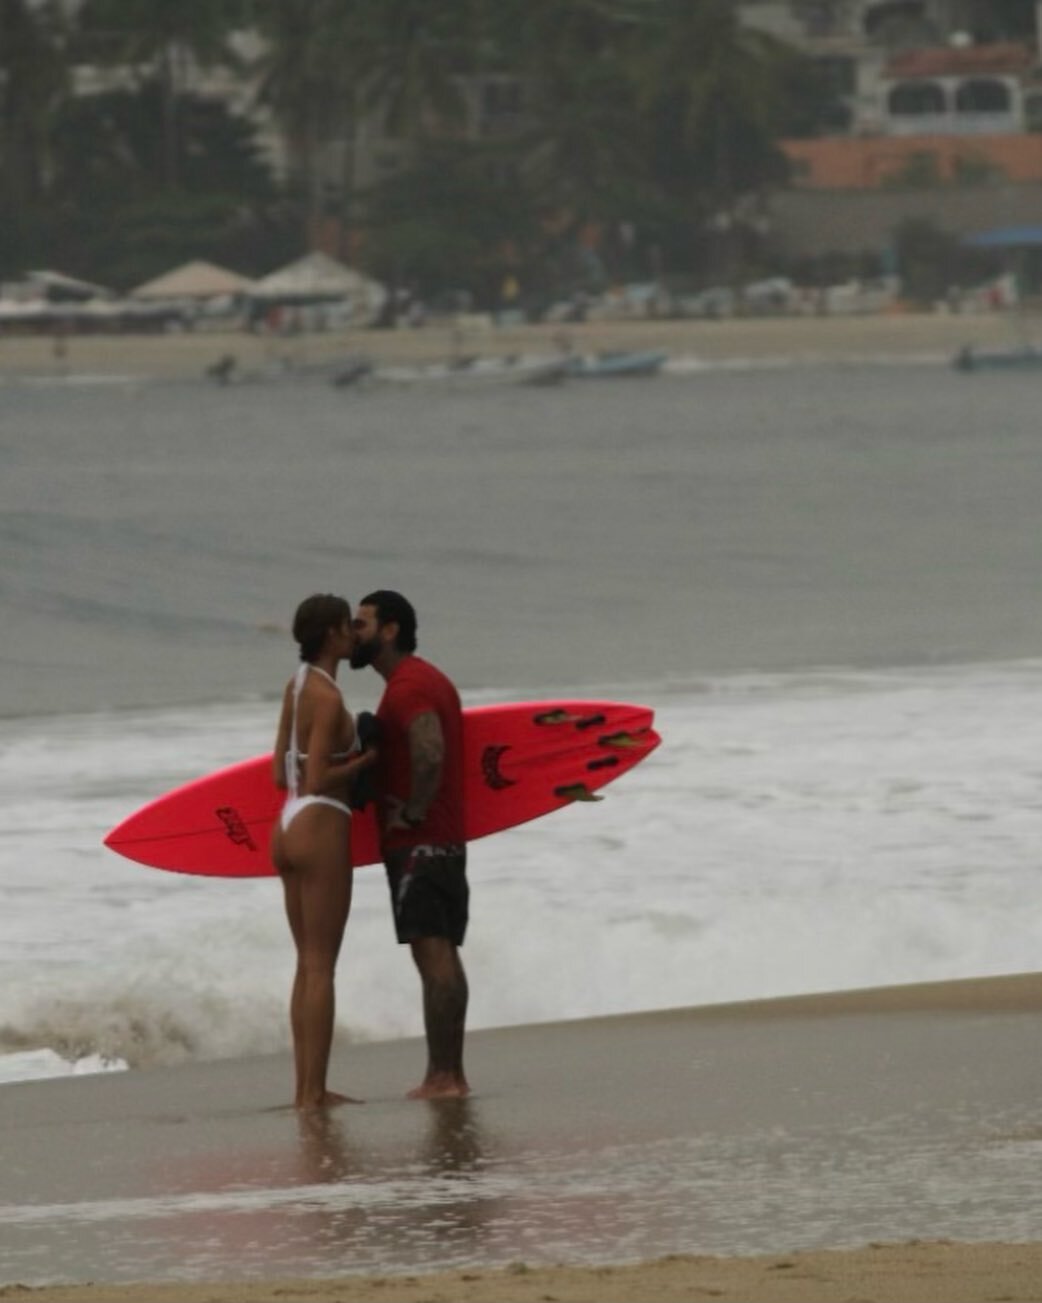 Валя Иванова и Тимати целовались на пляжу, но снимок никак не тянет на случайный